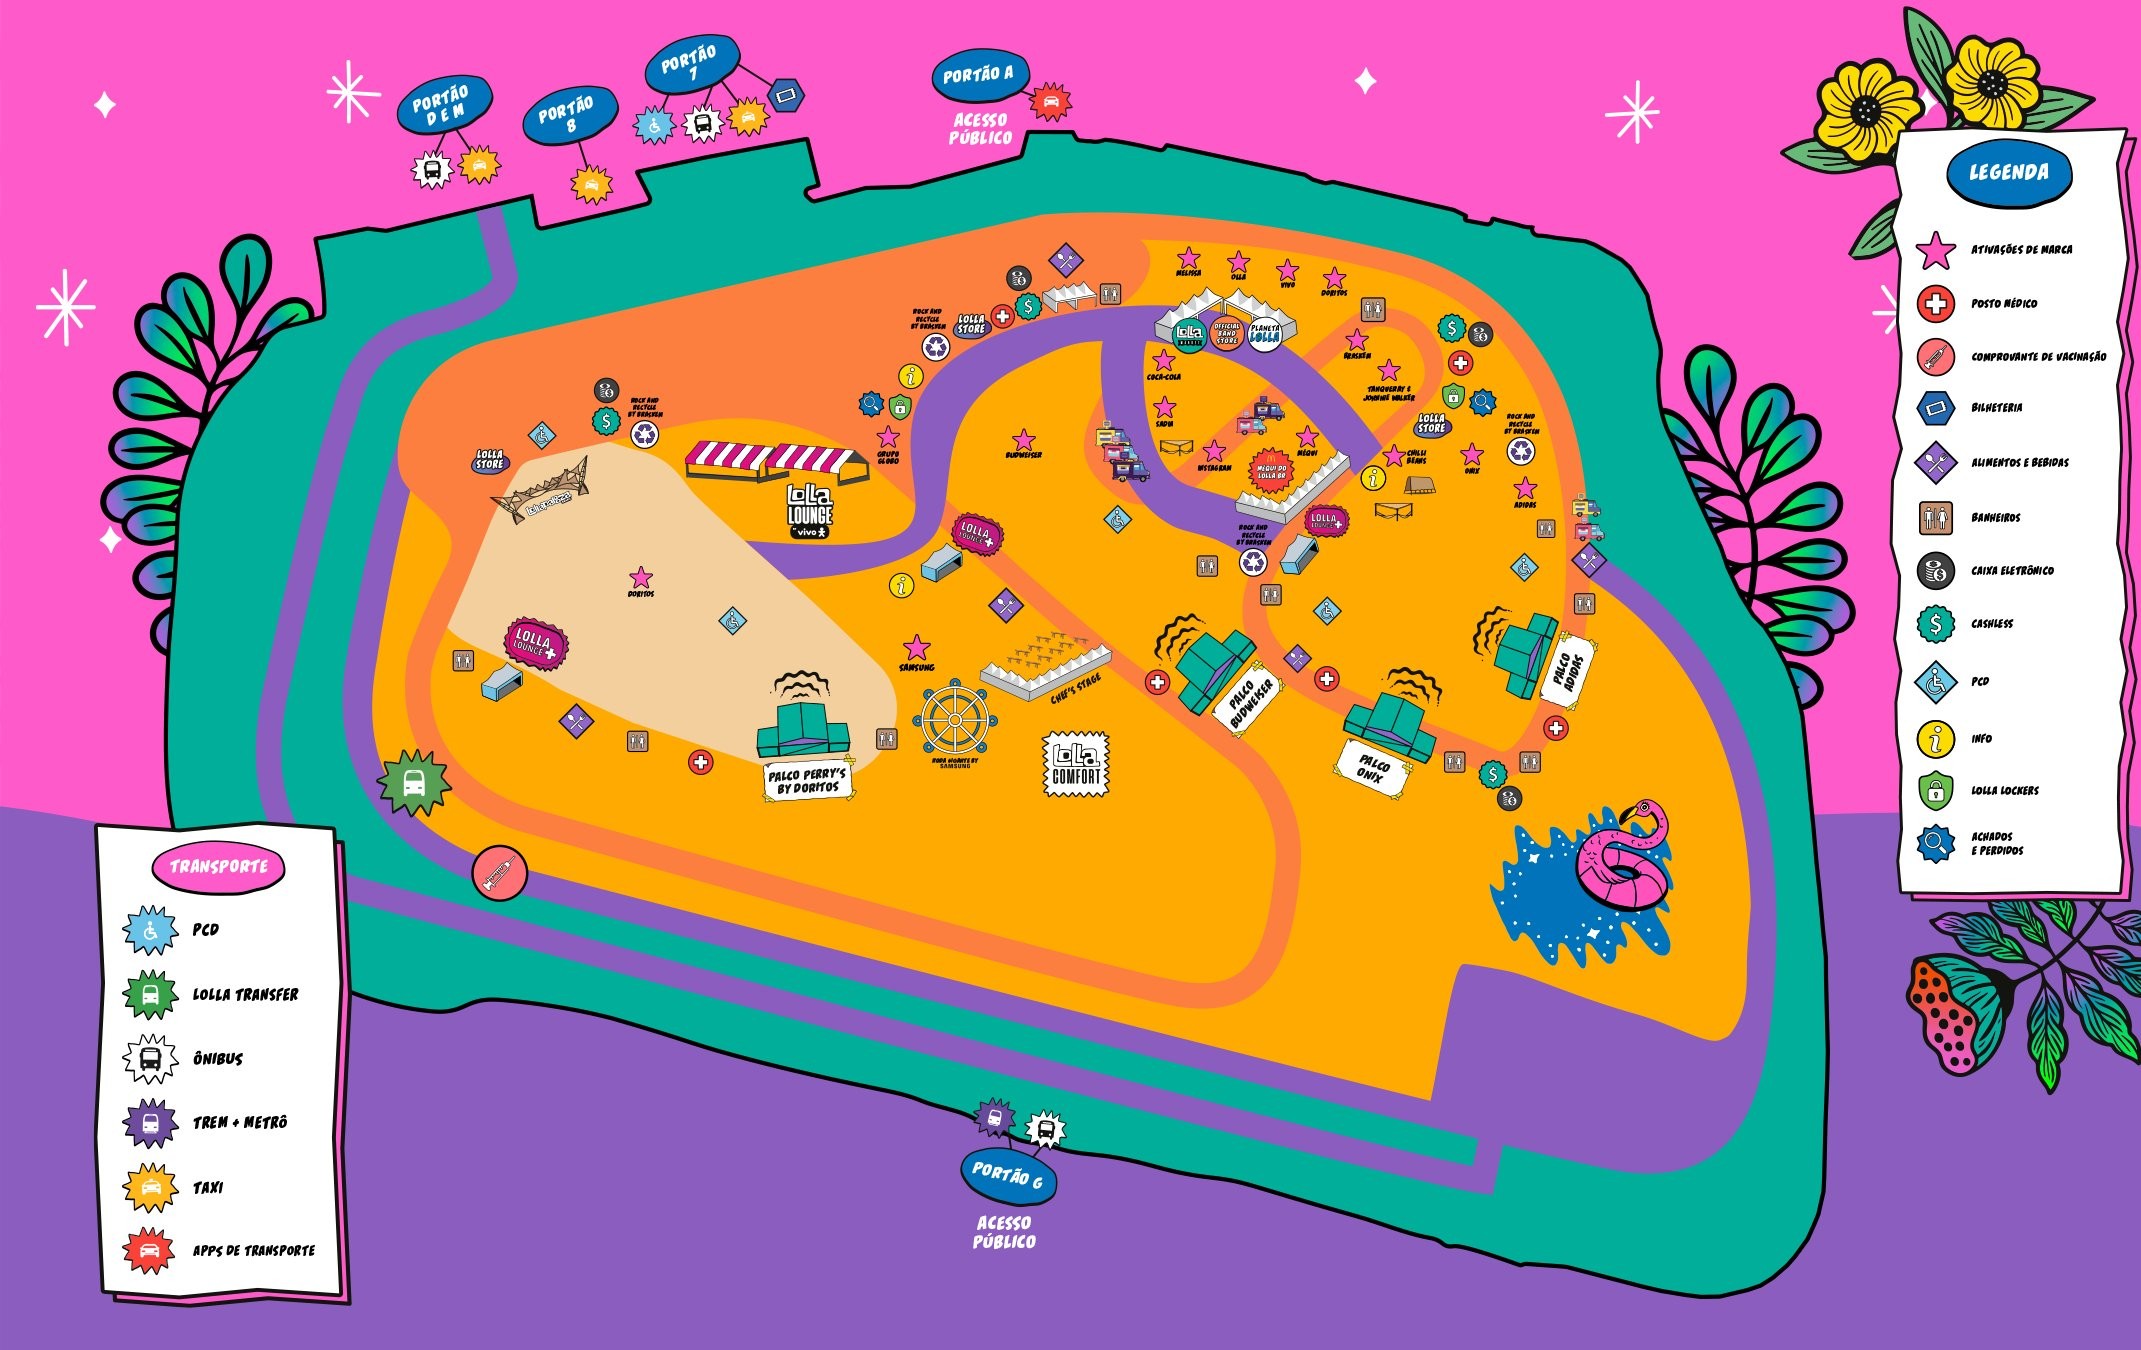 Mapa do Lollapalooza mostra localização dos palcos do festival Pop e Arte